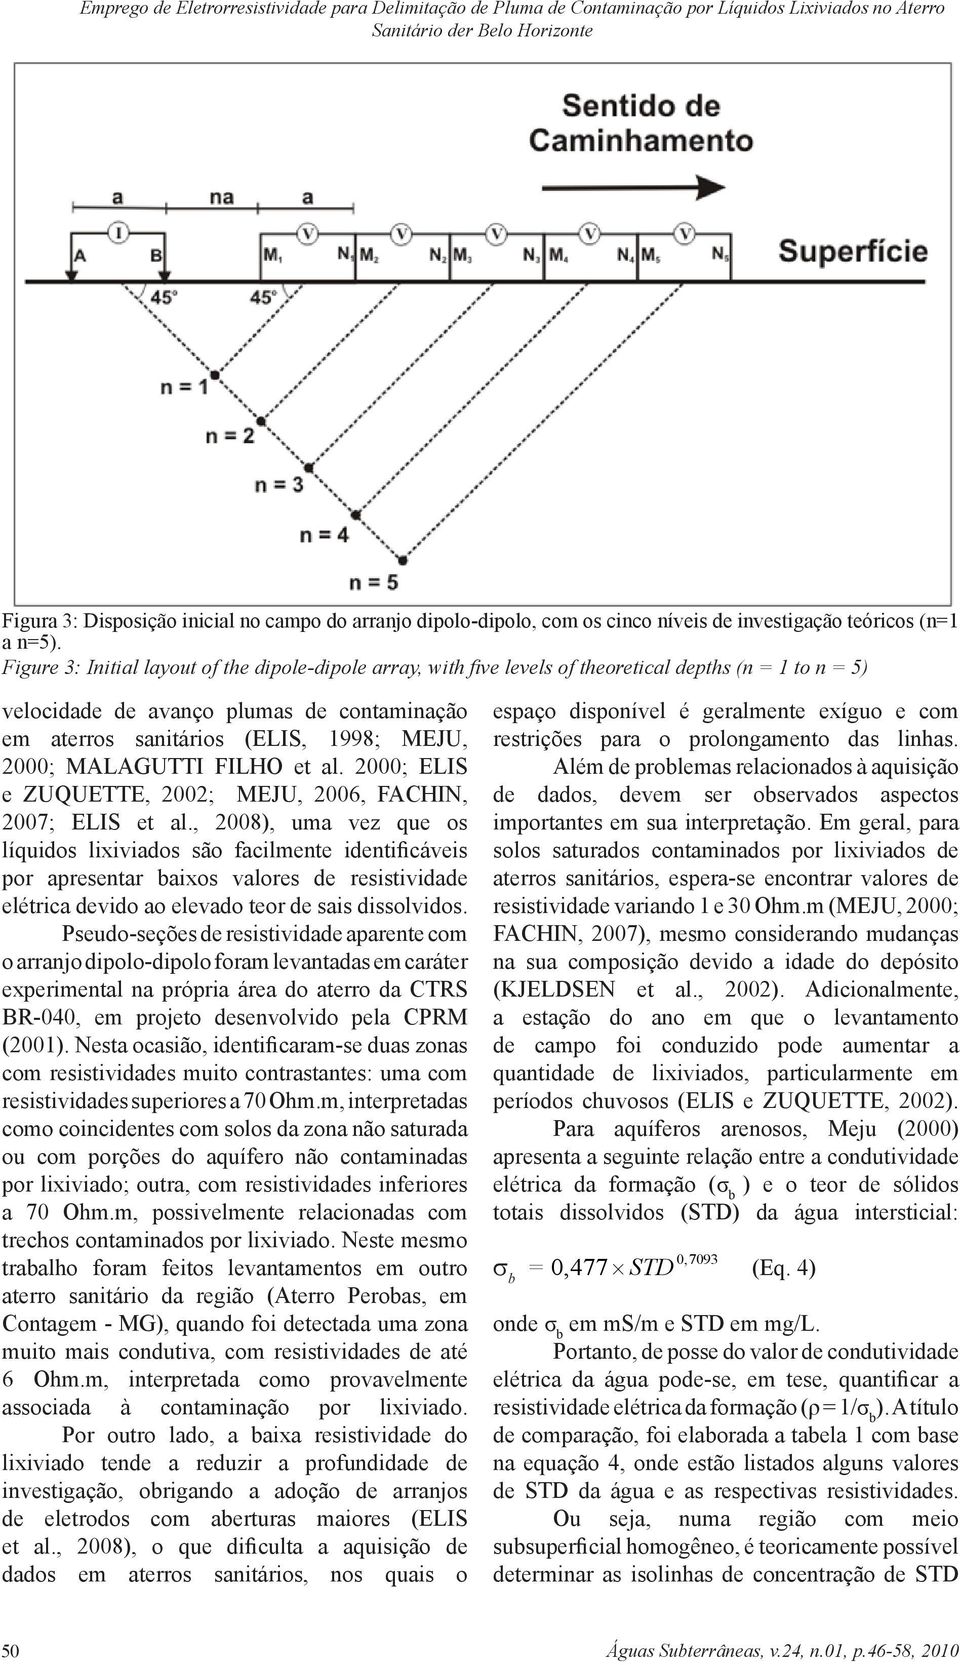 Figure 3: Initial layout of the dipole-dipole array, with five levels of theoretical depths (n = 1 to n = 5) velocidade de avanço plumas de contaminação em aterros sanitários (ELIS, 1998; MEJU, 2000;